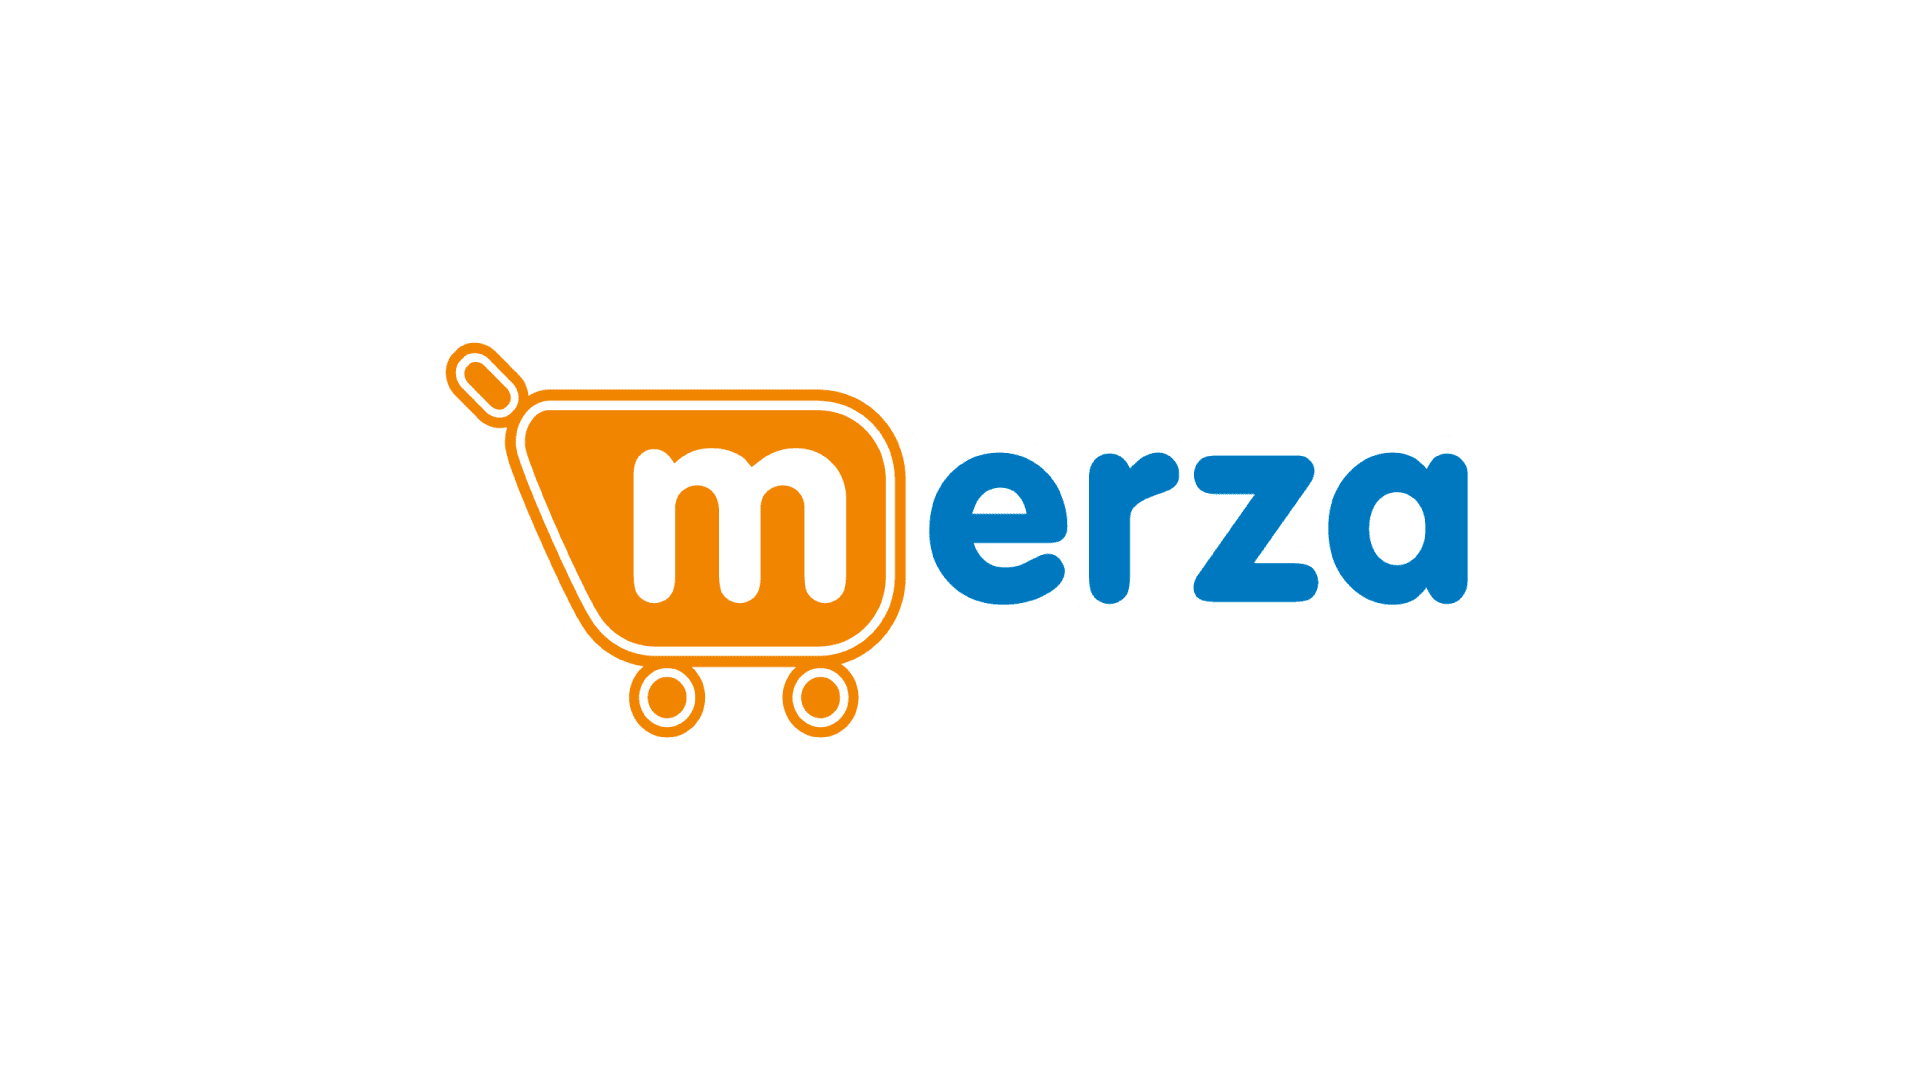 Grupo Merza works with CADS